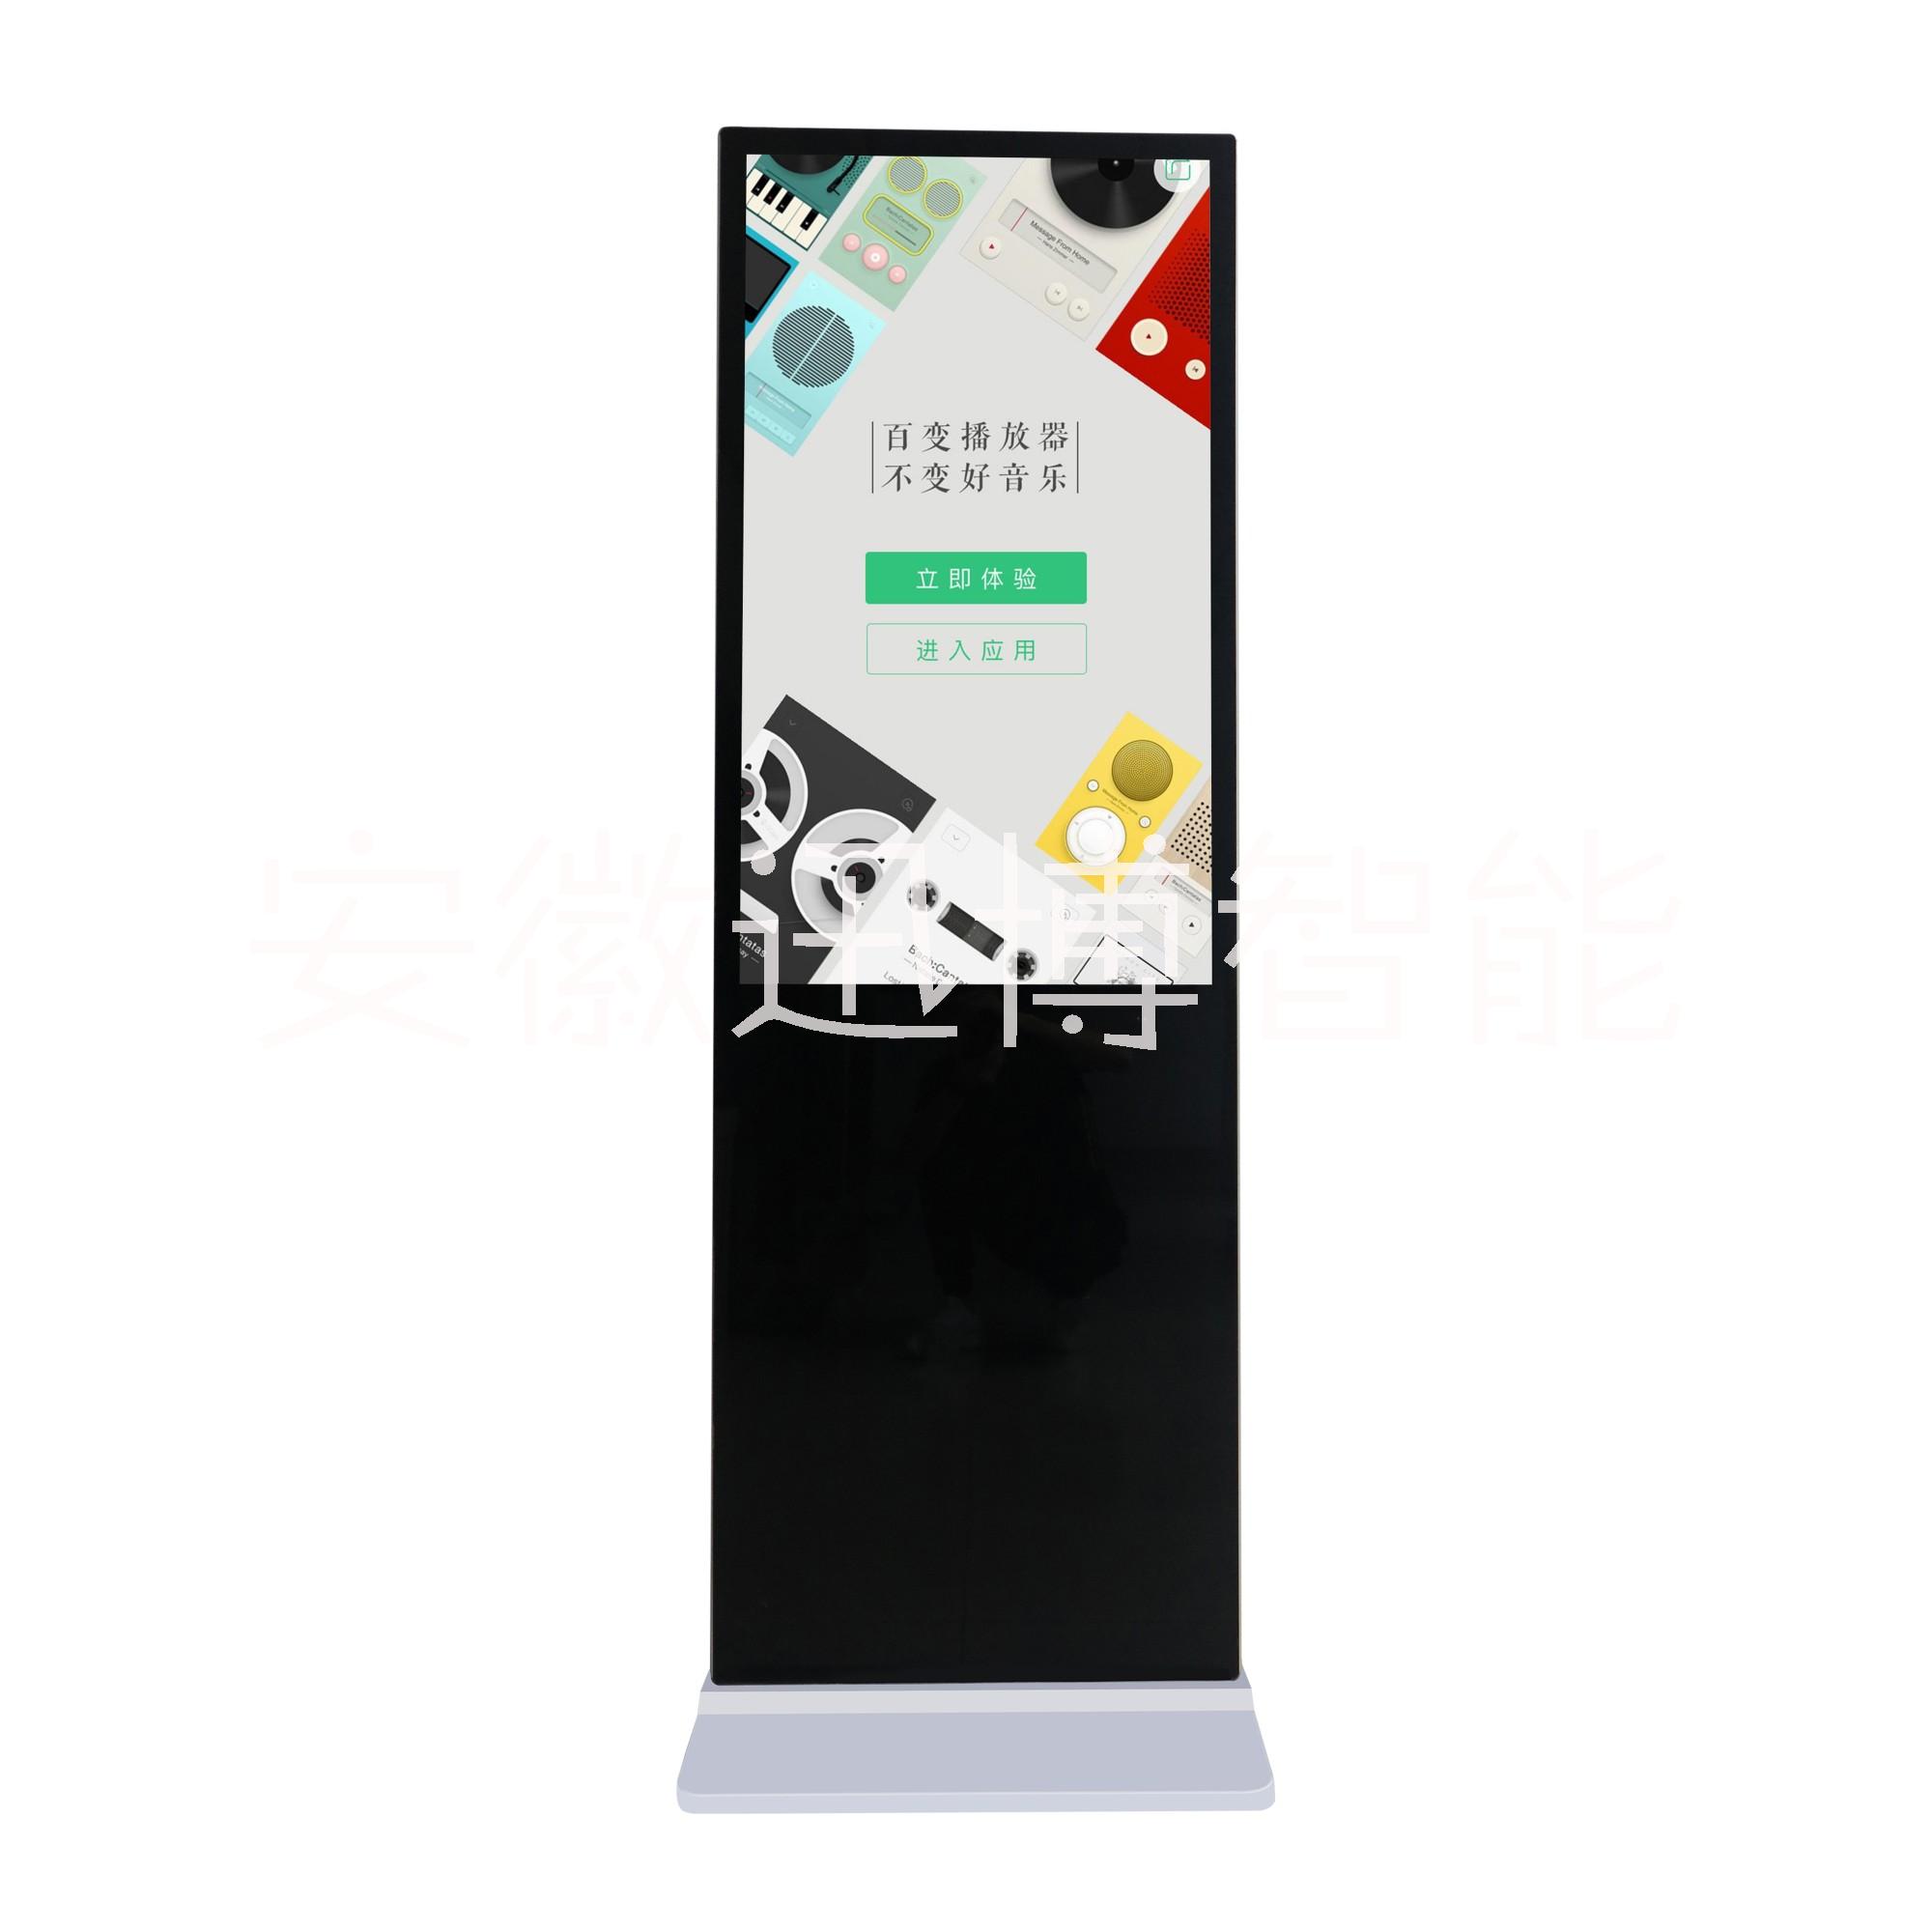 安徽液晶广告屏机-液晶信息发布系统-合肥广告屏机-安徽立式信息发布广告屏